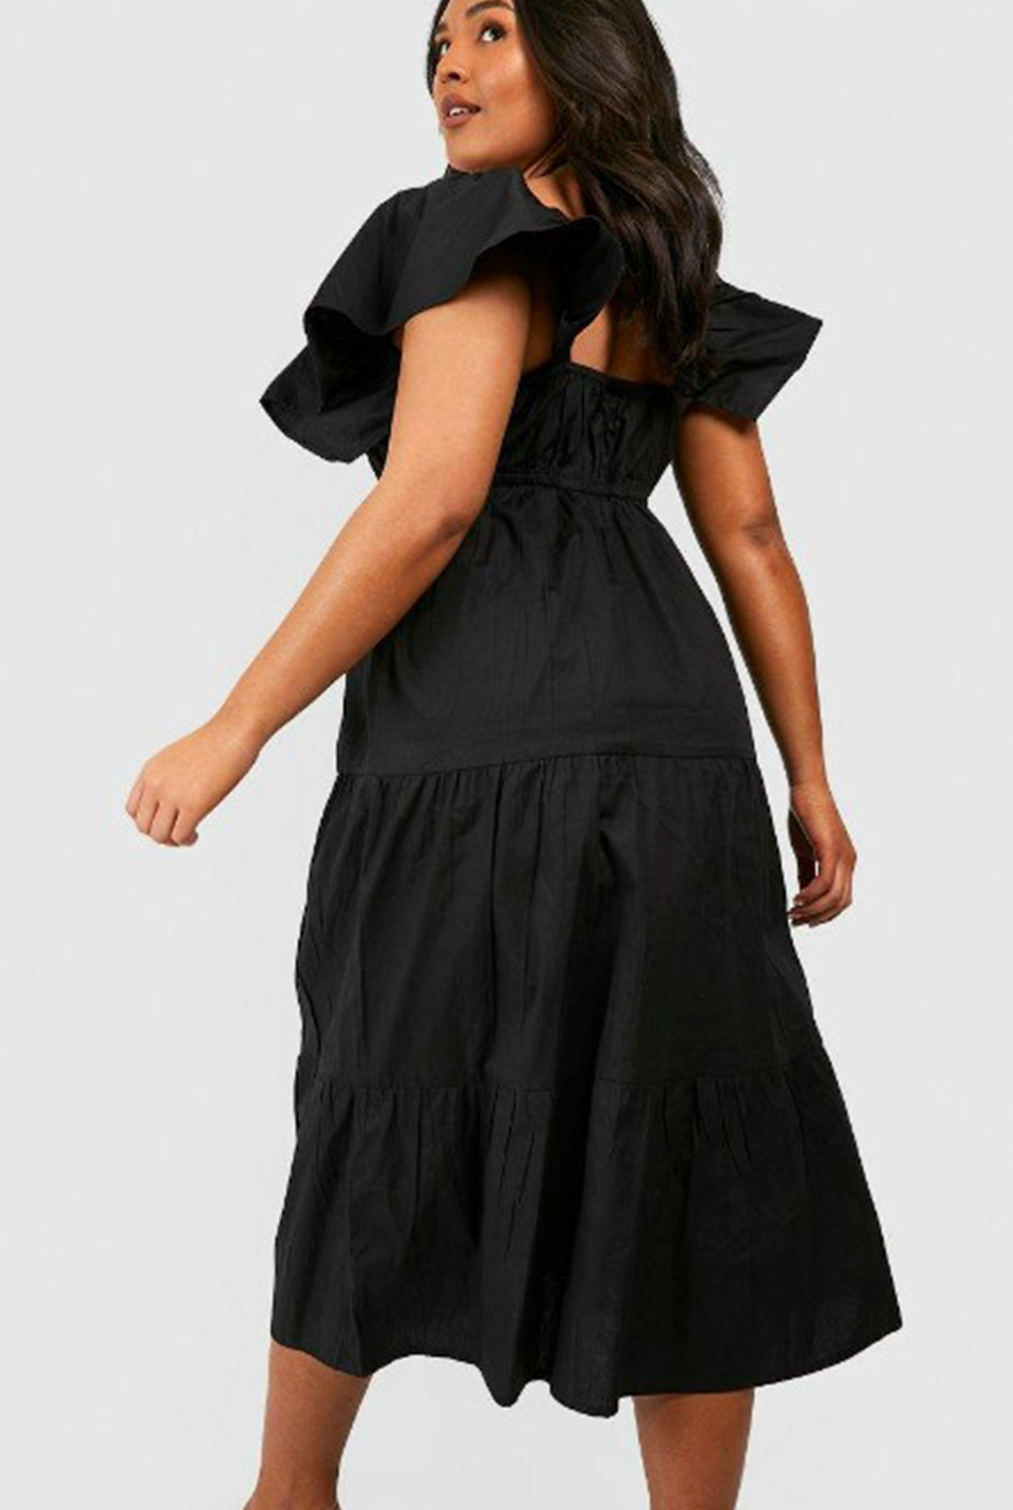 Spry Black Dress